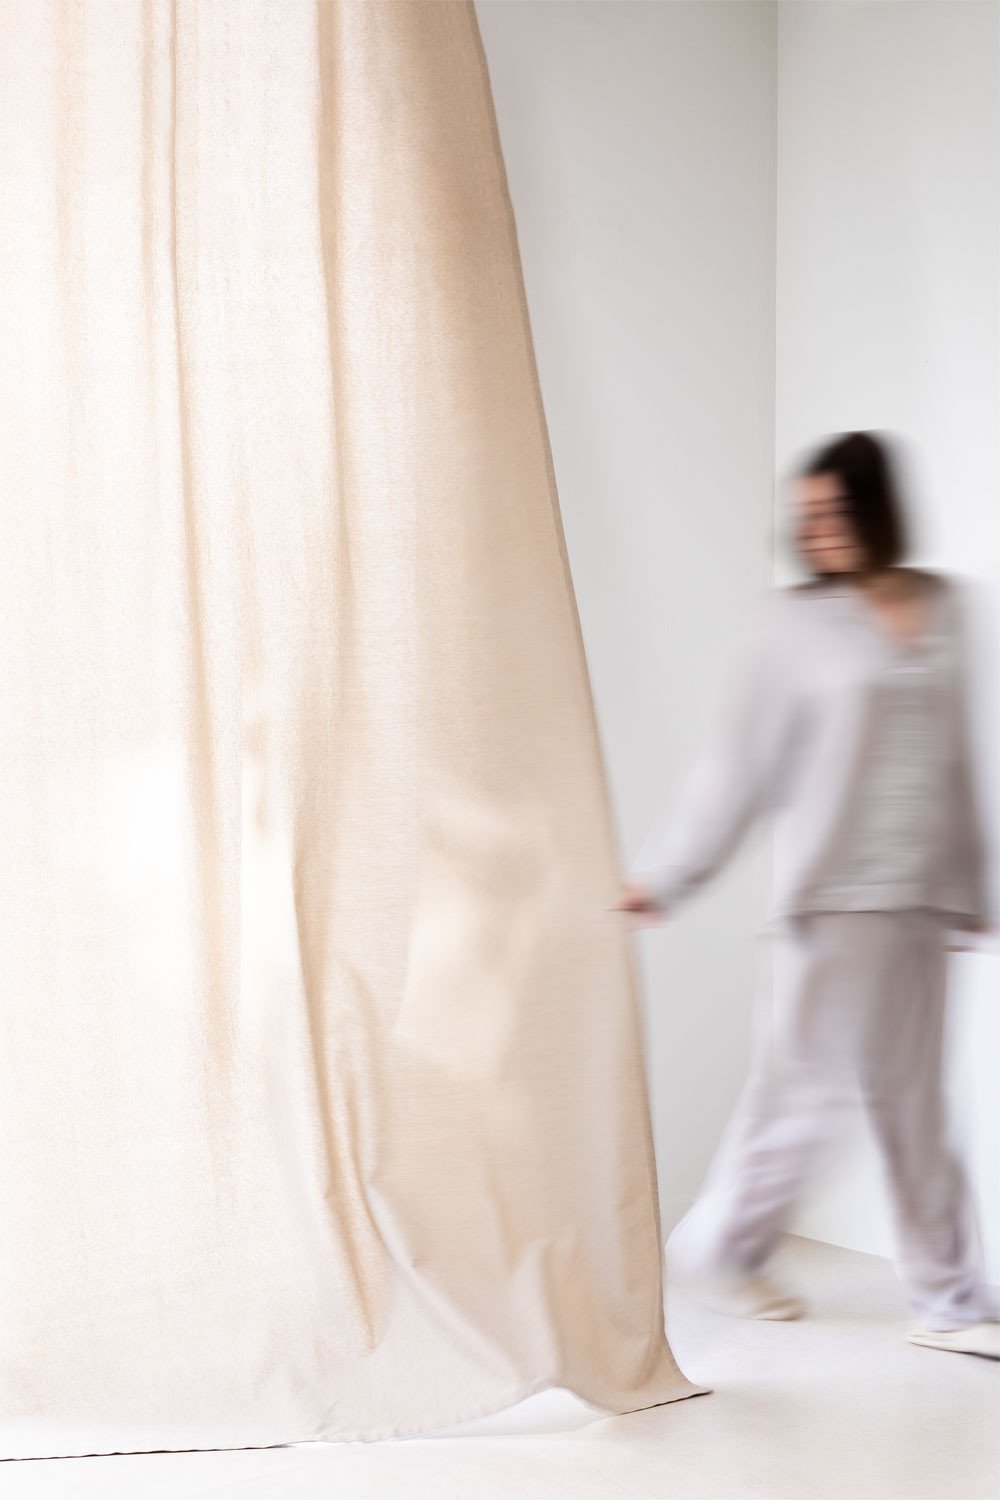 Tenda in cotone (140x260 cm) Ardy, immagine della galleria 1